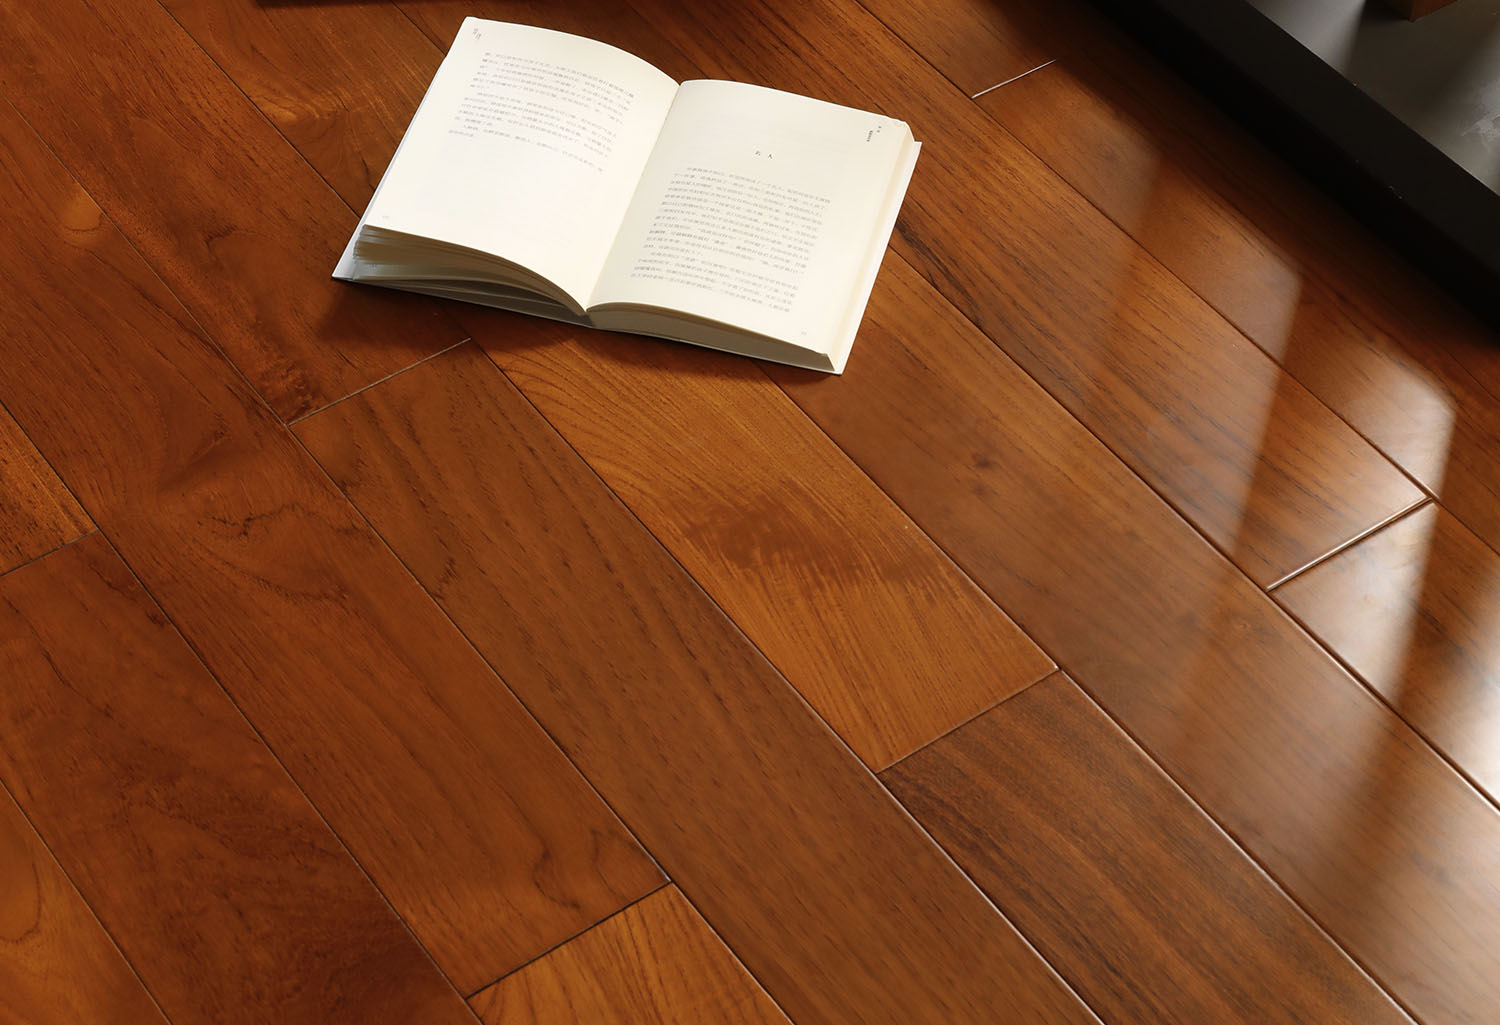 柚木-实木地板-安信地板官网-安信实木地热地板-实木复合地板-整木定制-地板加盟